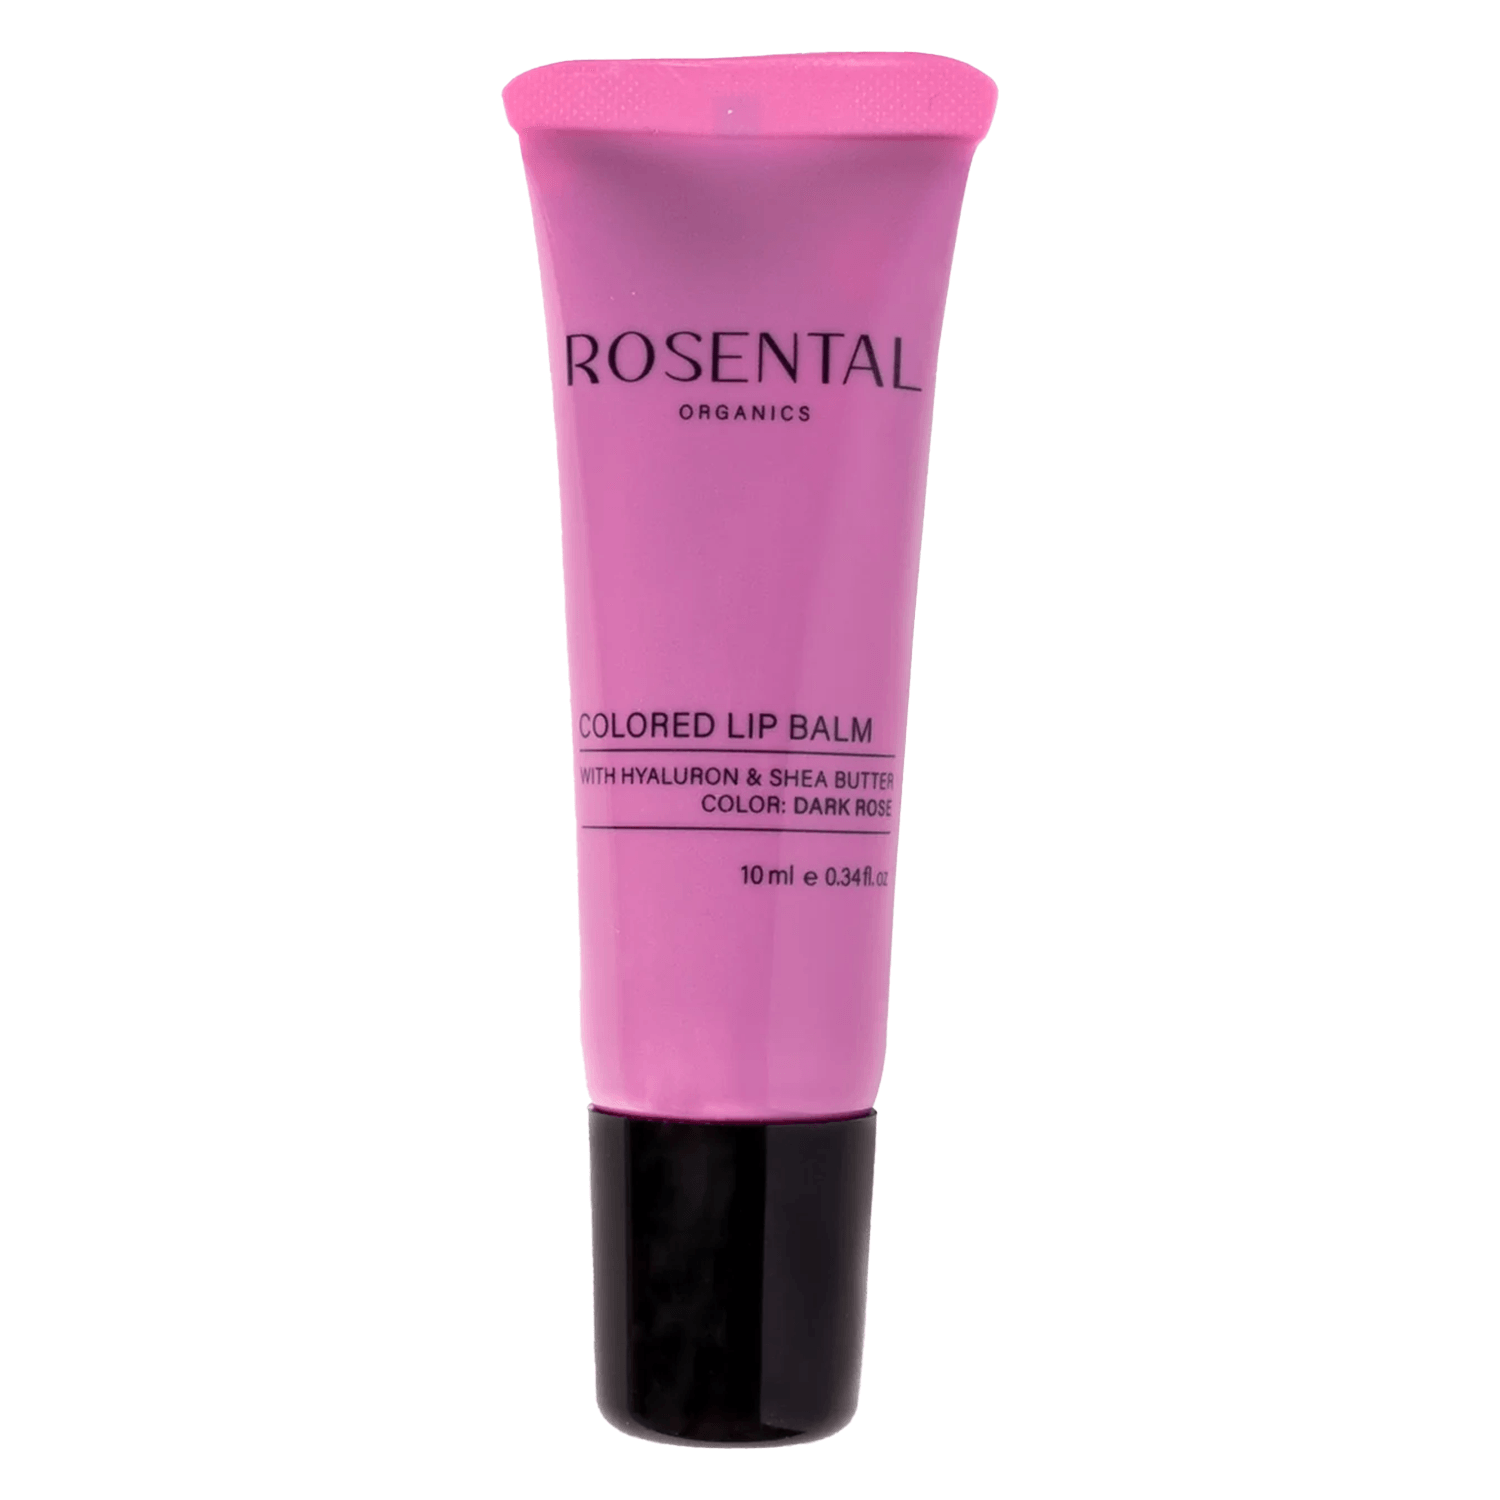 Produktbild von Rosental Make Up - Colored Lip Balm Dark Rose